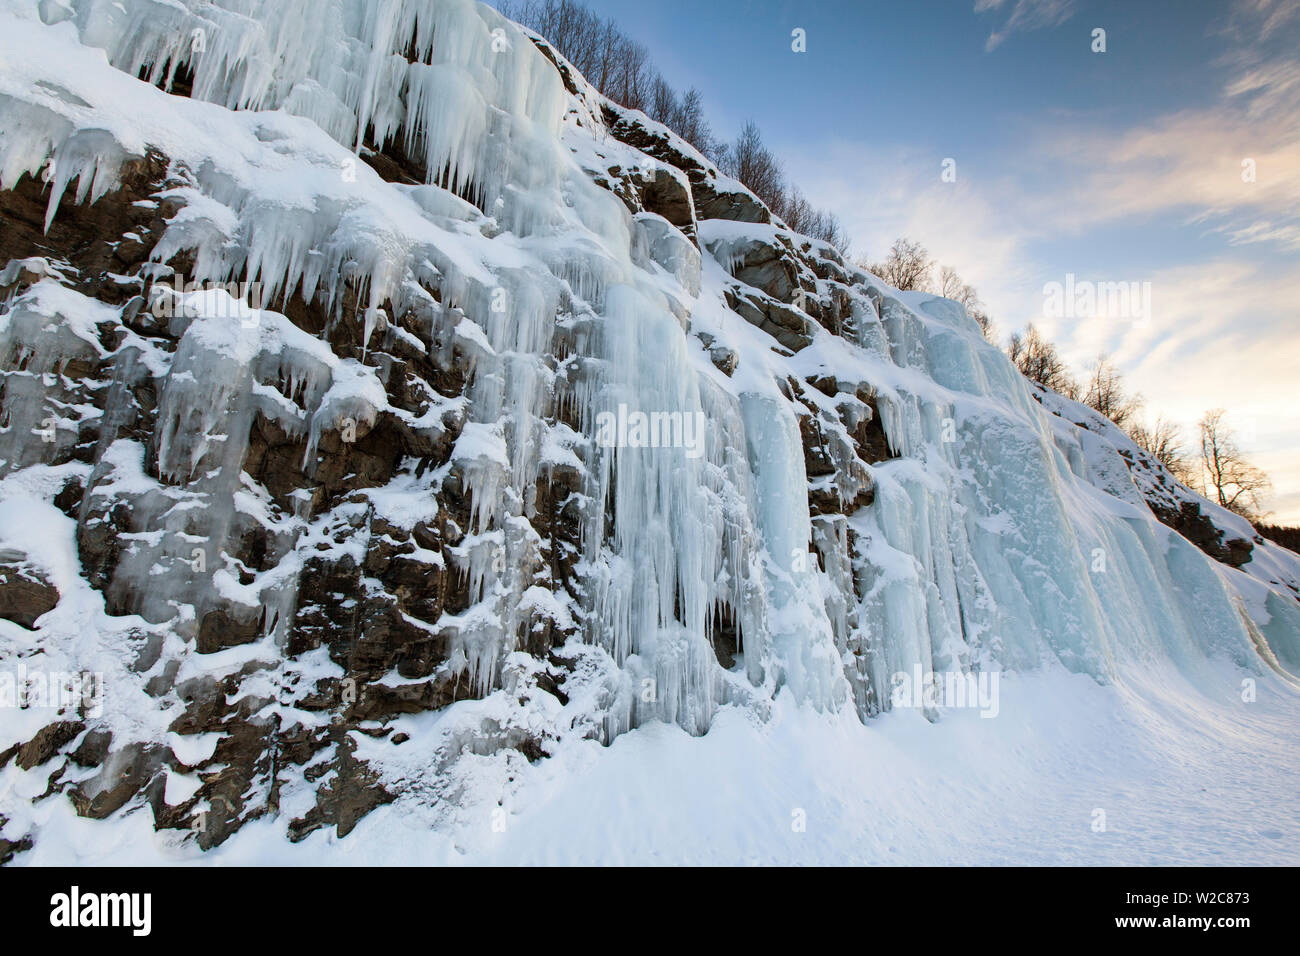 Frozen waterfall, Troms region, Norway Stock Photo